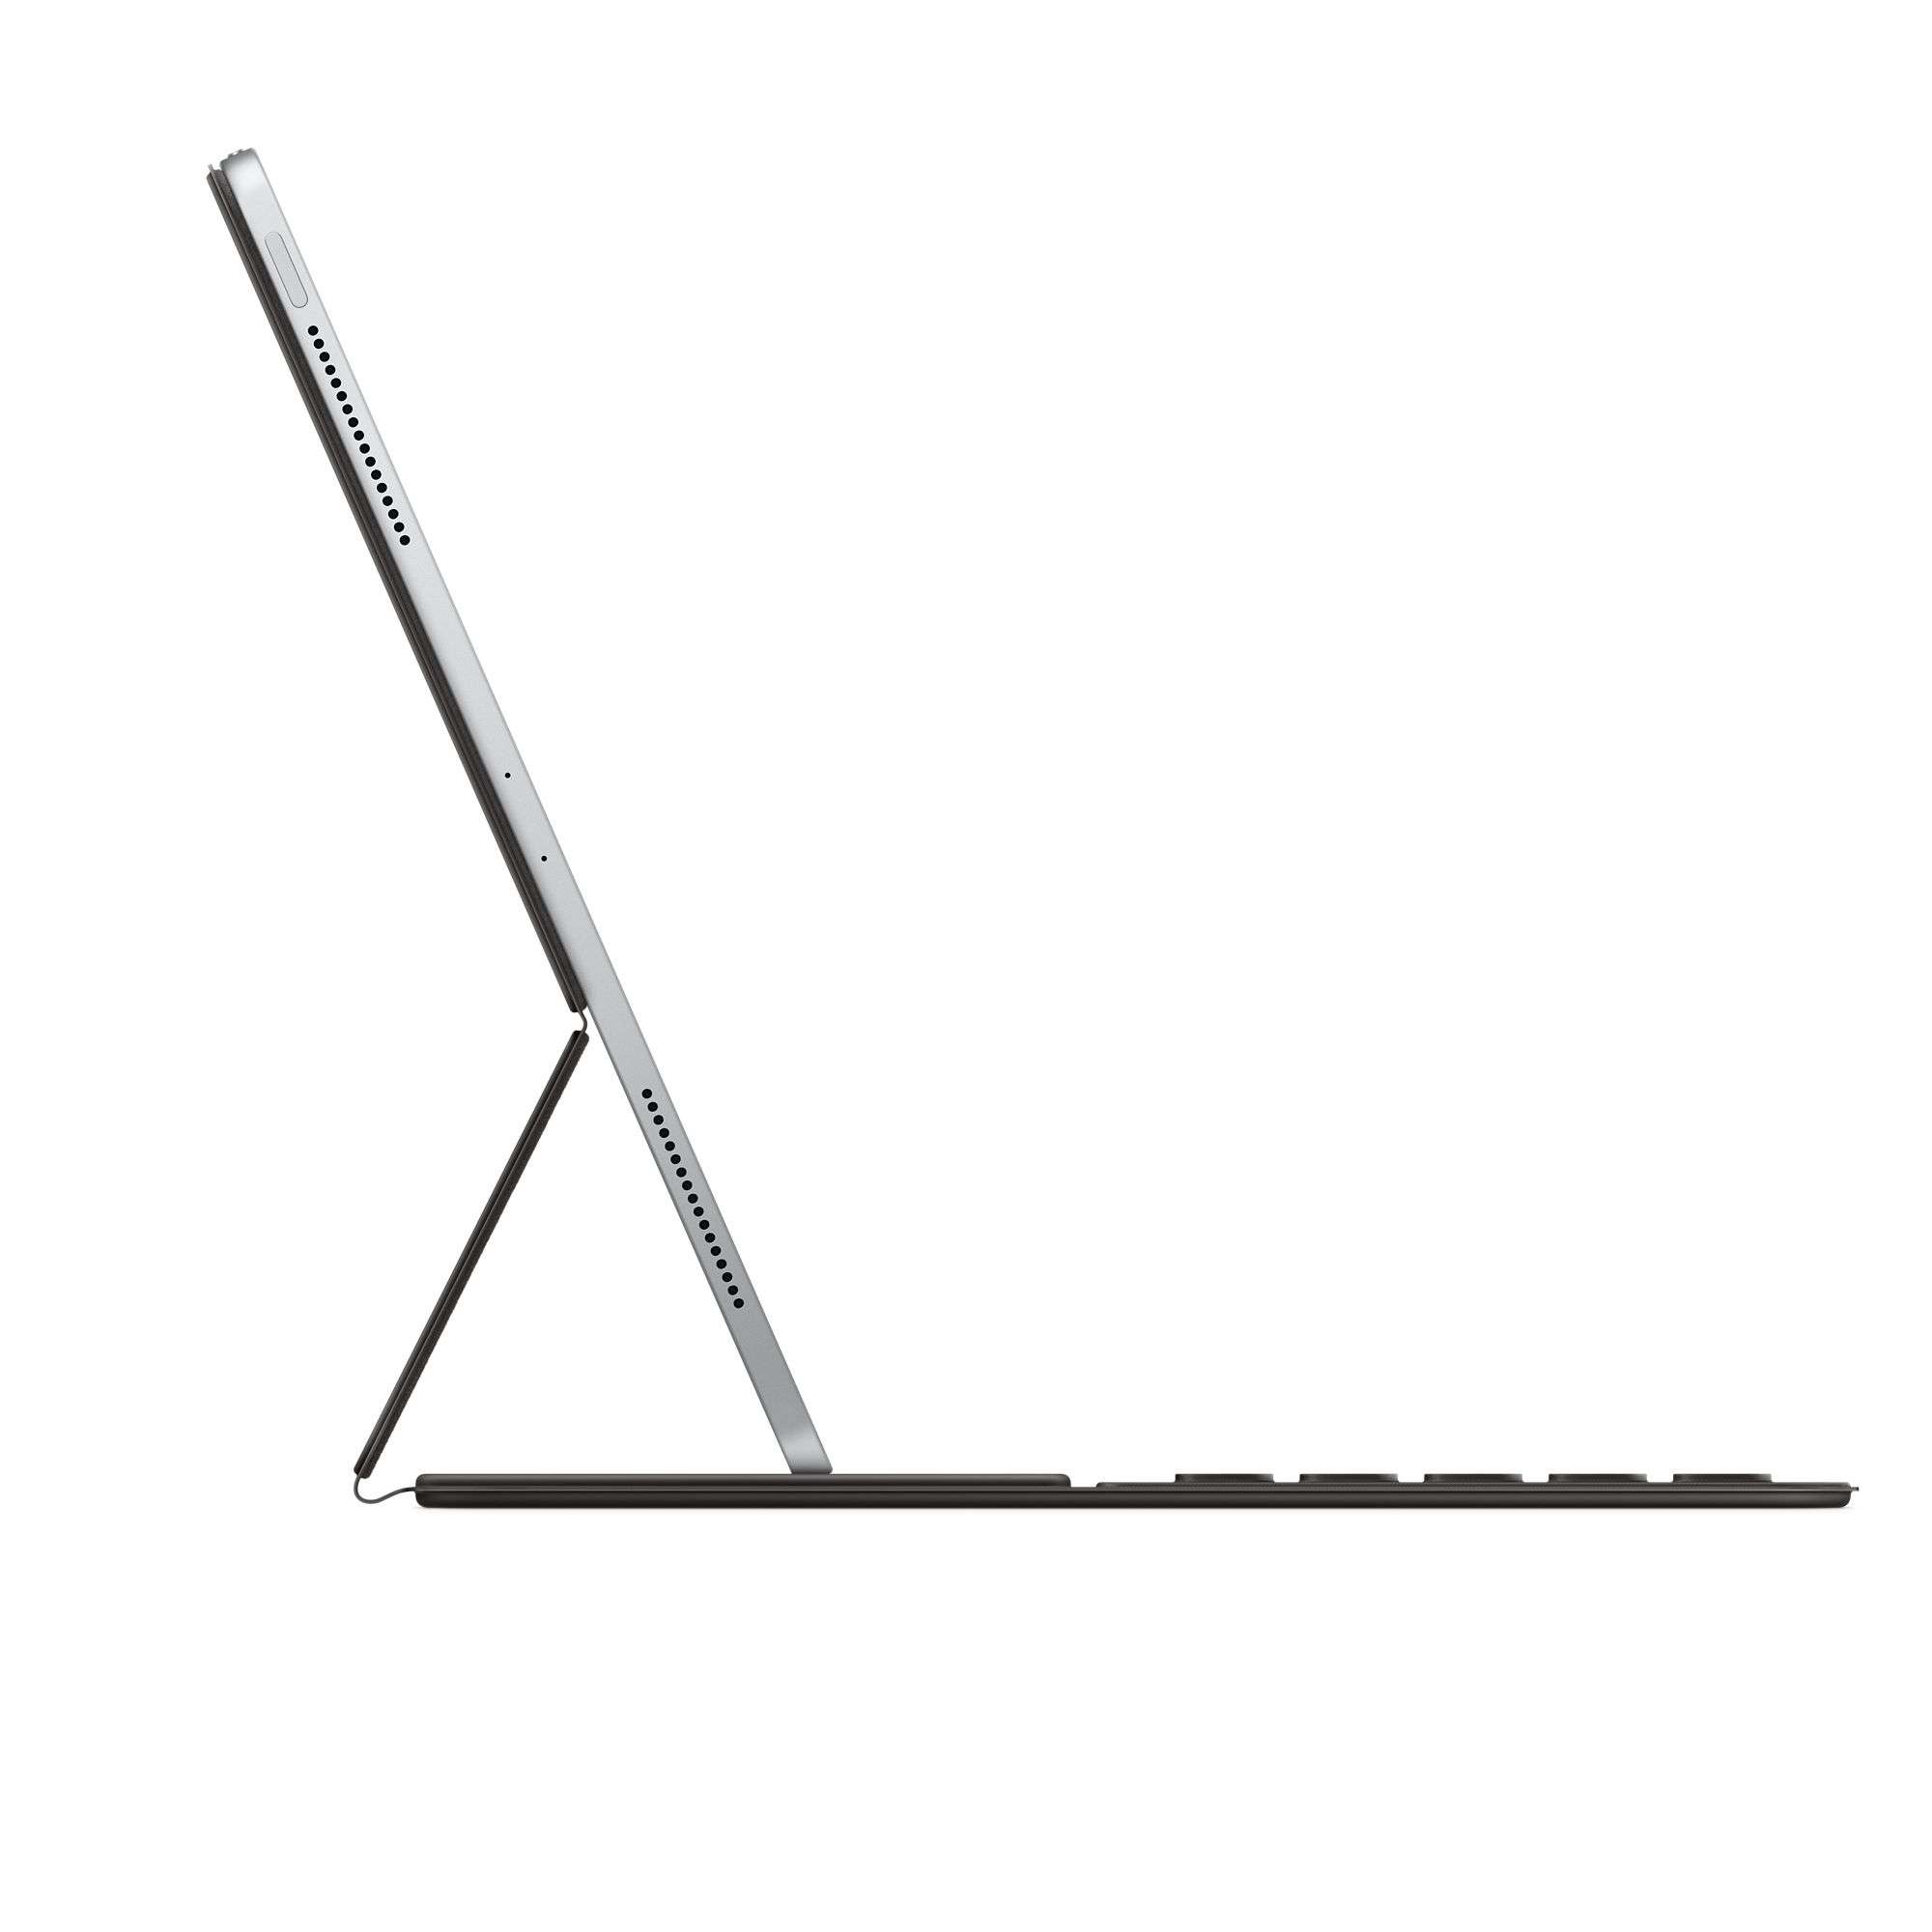 12.9 inç iPad Pro (5. nesil için) Smart Keyboard Folio Türkçe F Klavye MXNL2TU/A